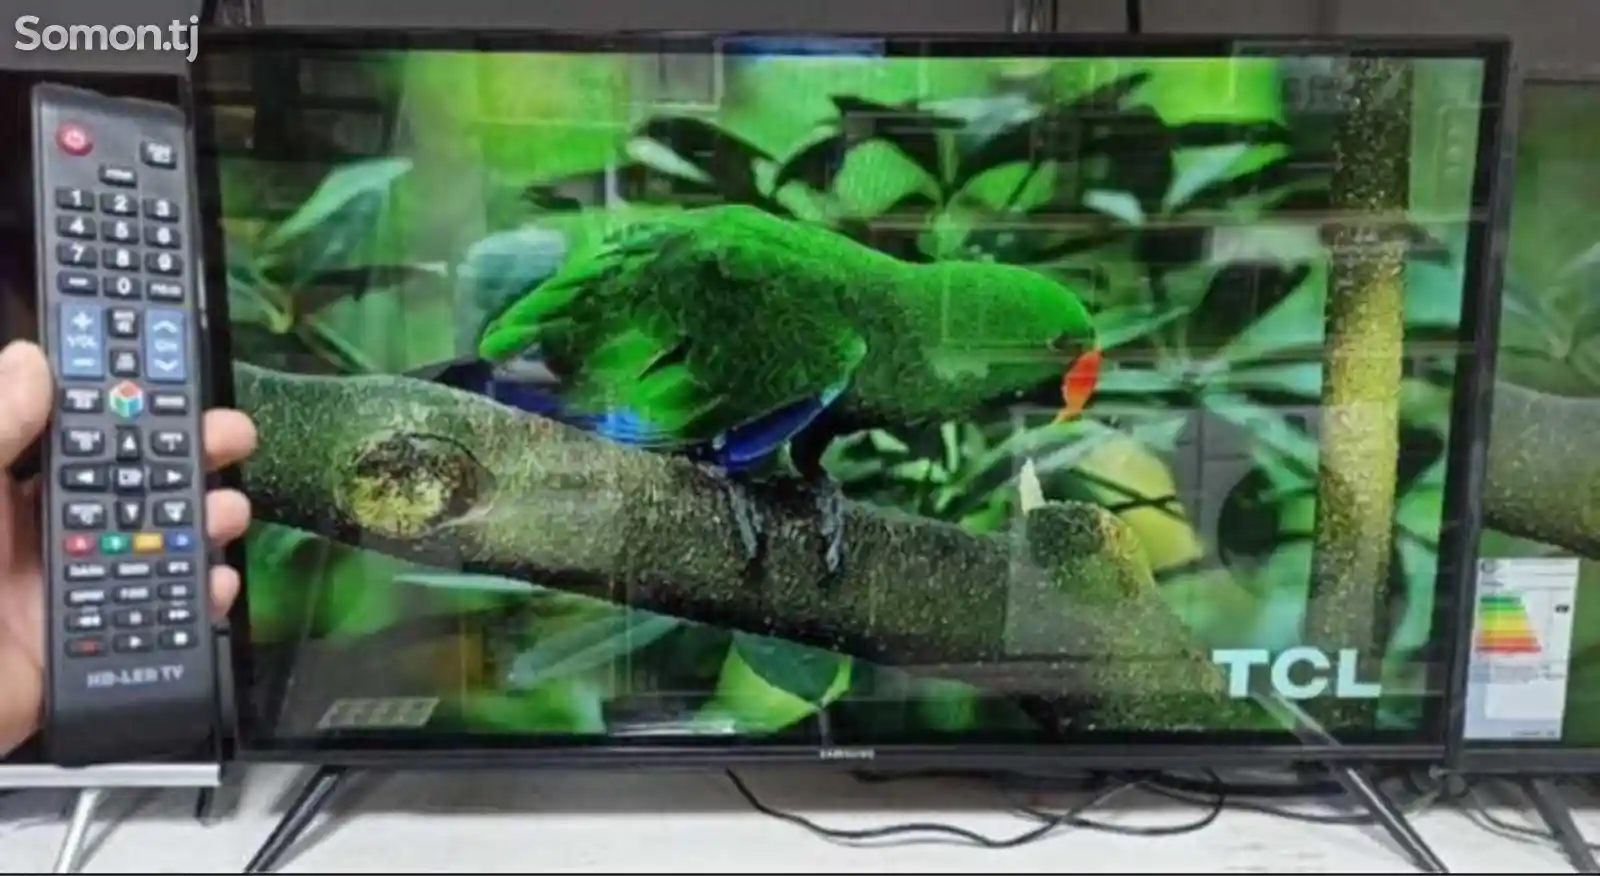 Телевизор Samsung 32